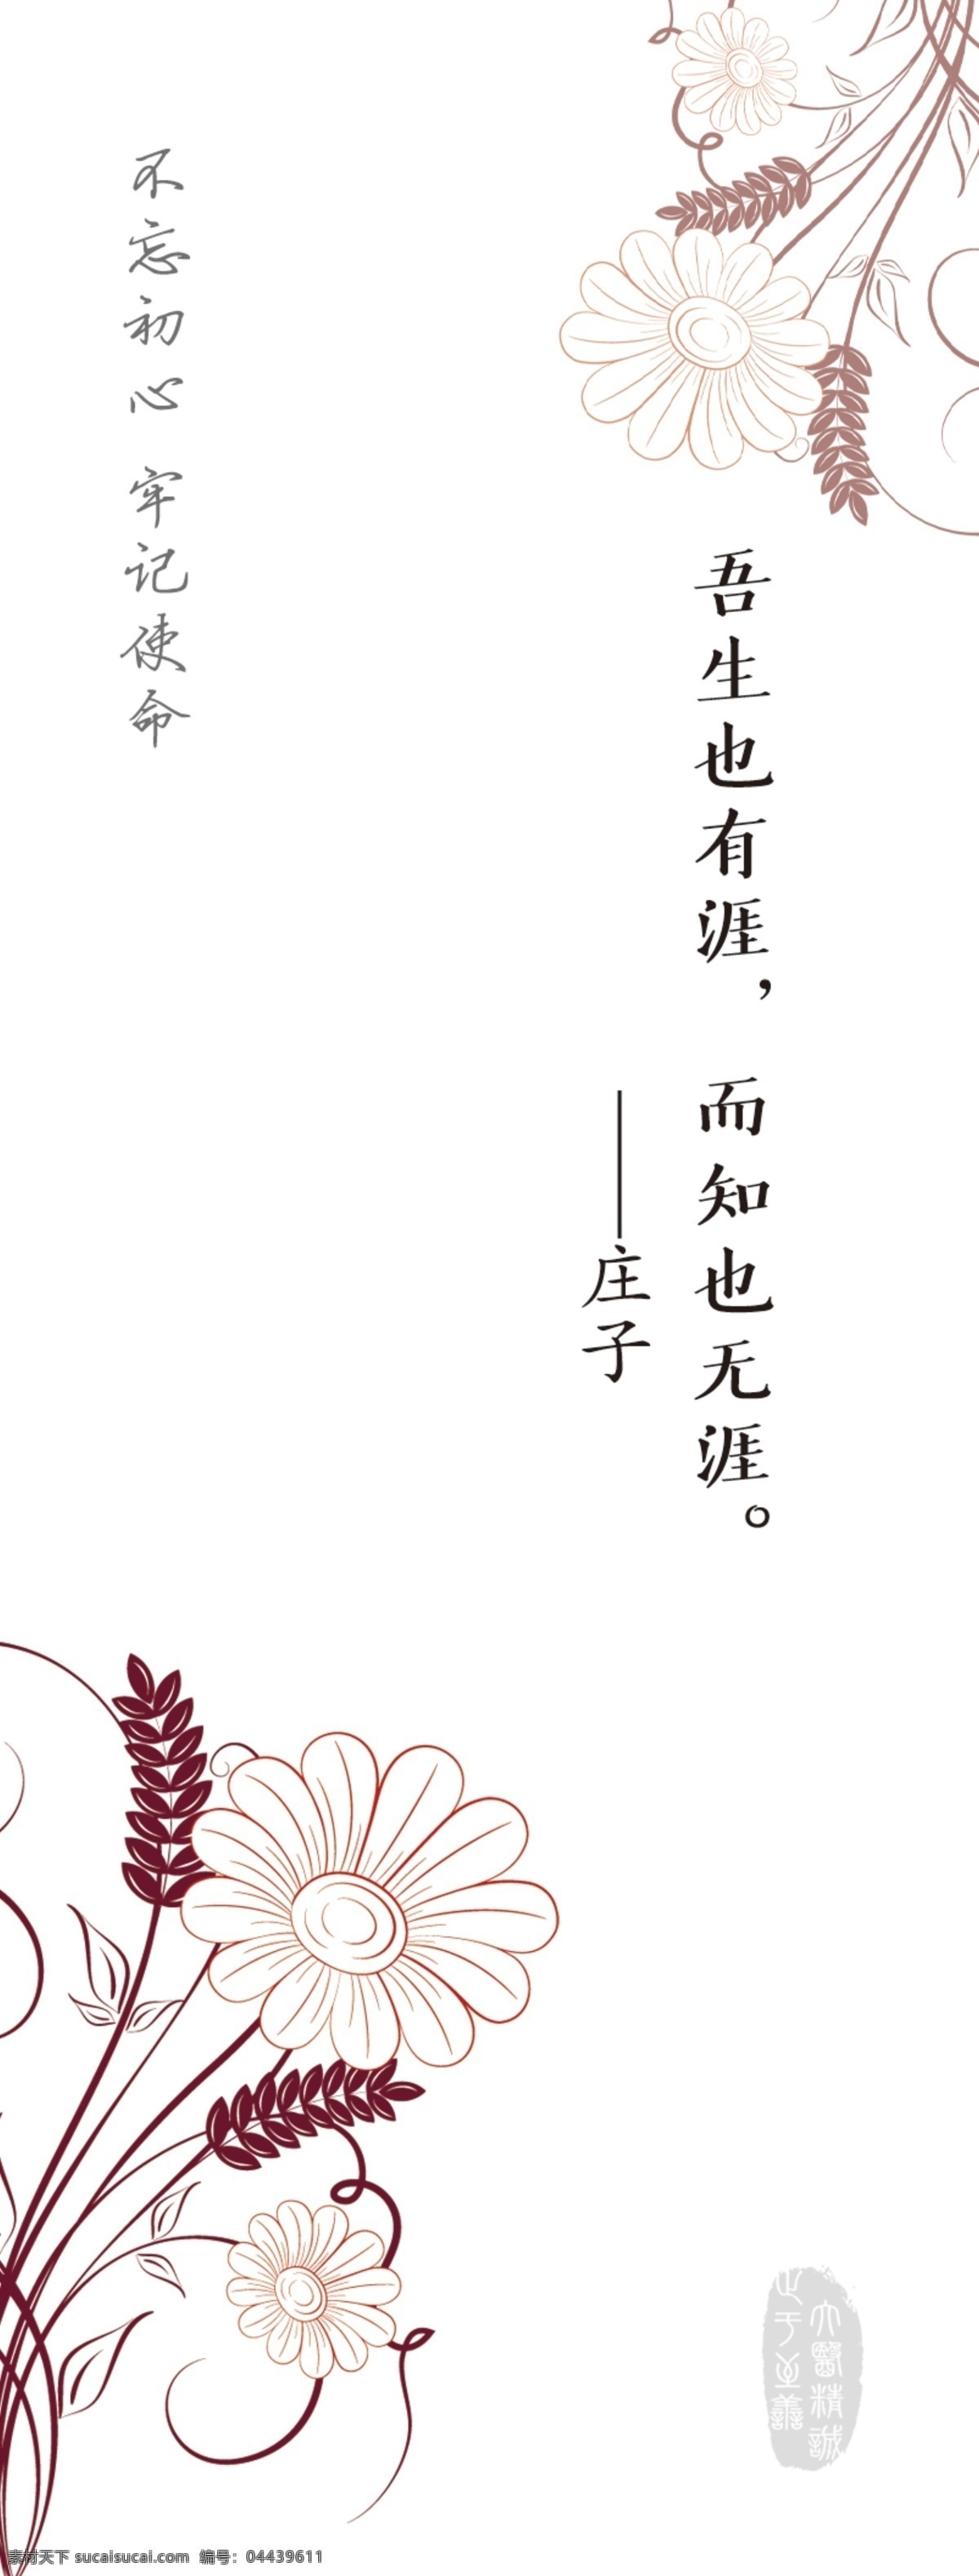 书签 传统图案 中国风 素雅 简约 名人名言 文化艺术 传统文化